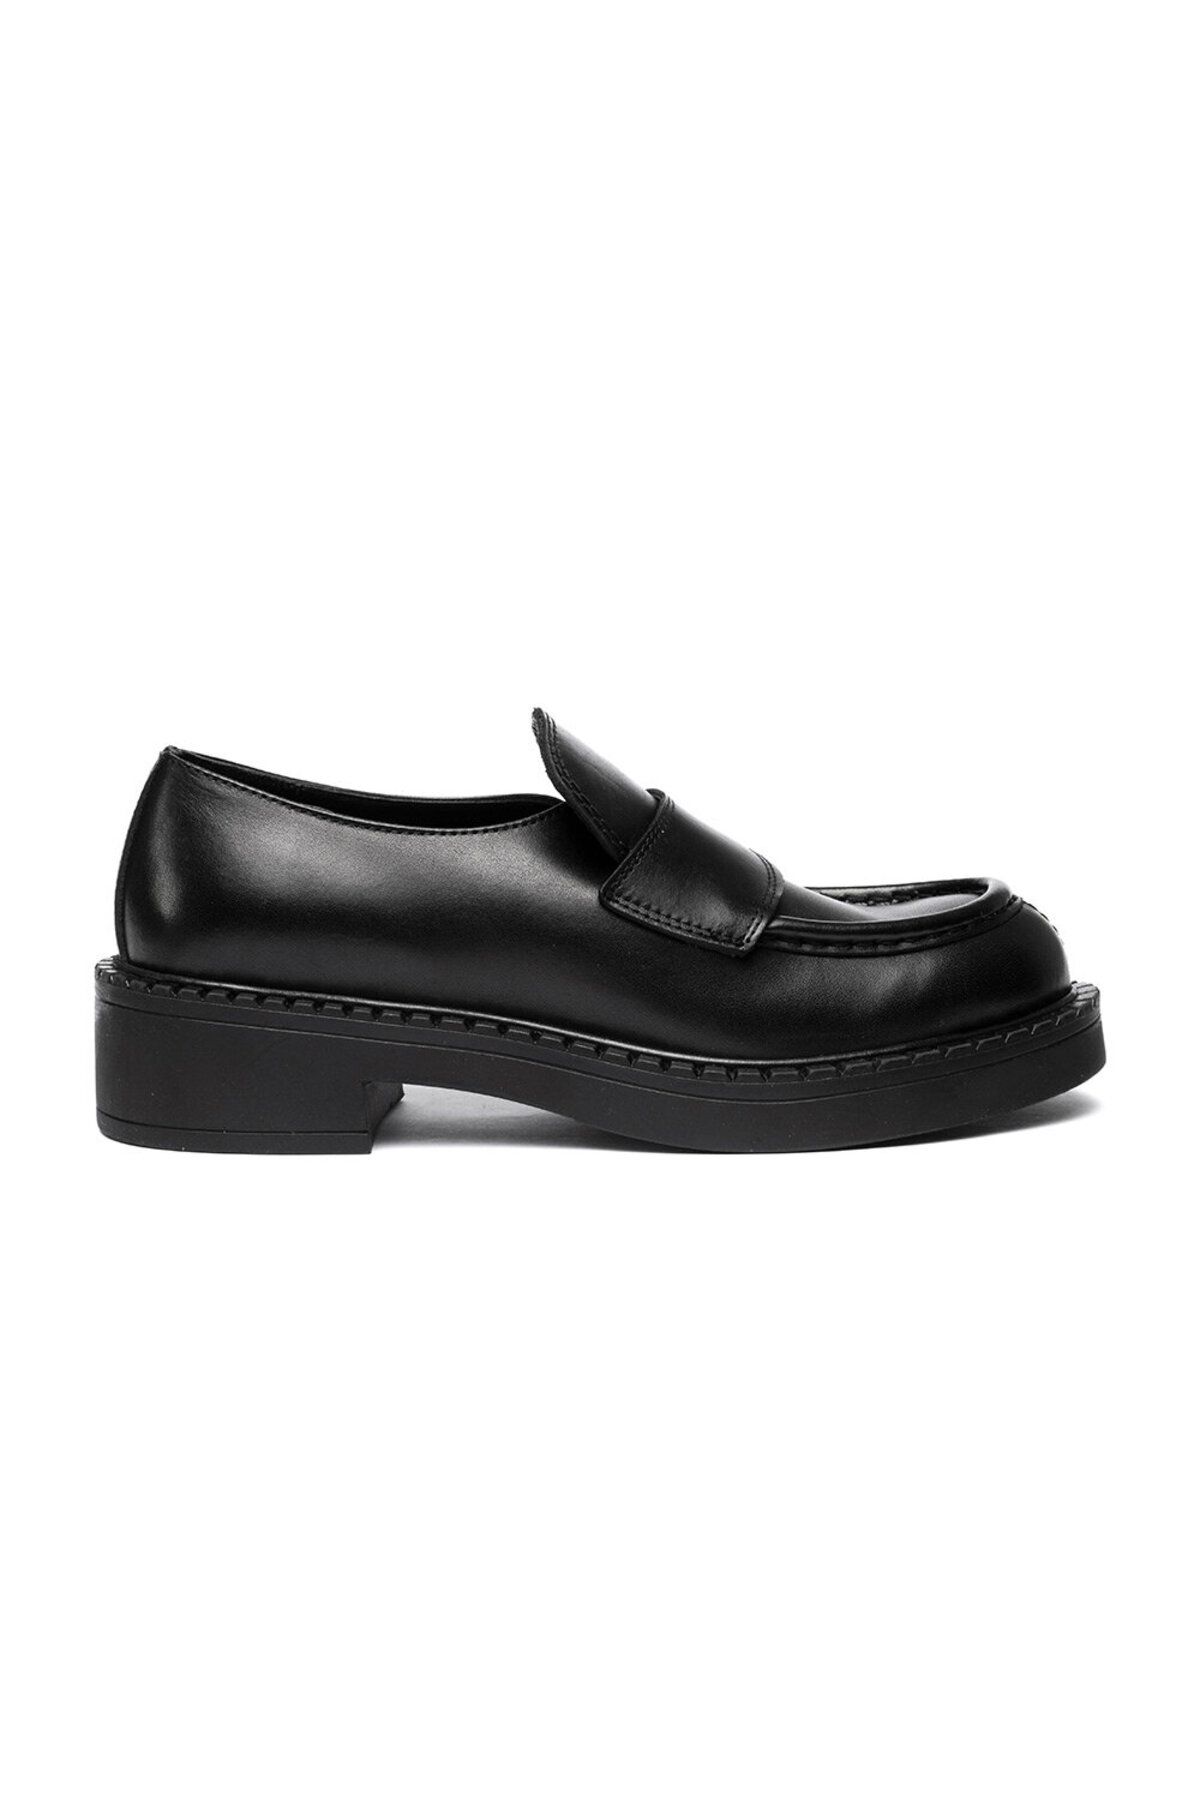 Greyder Kadın Siyah Hakiki Deri Loafer Ayakkabı 3k2ua72211